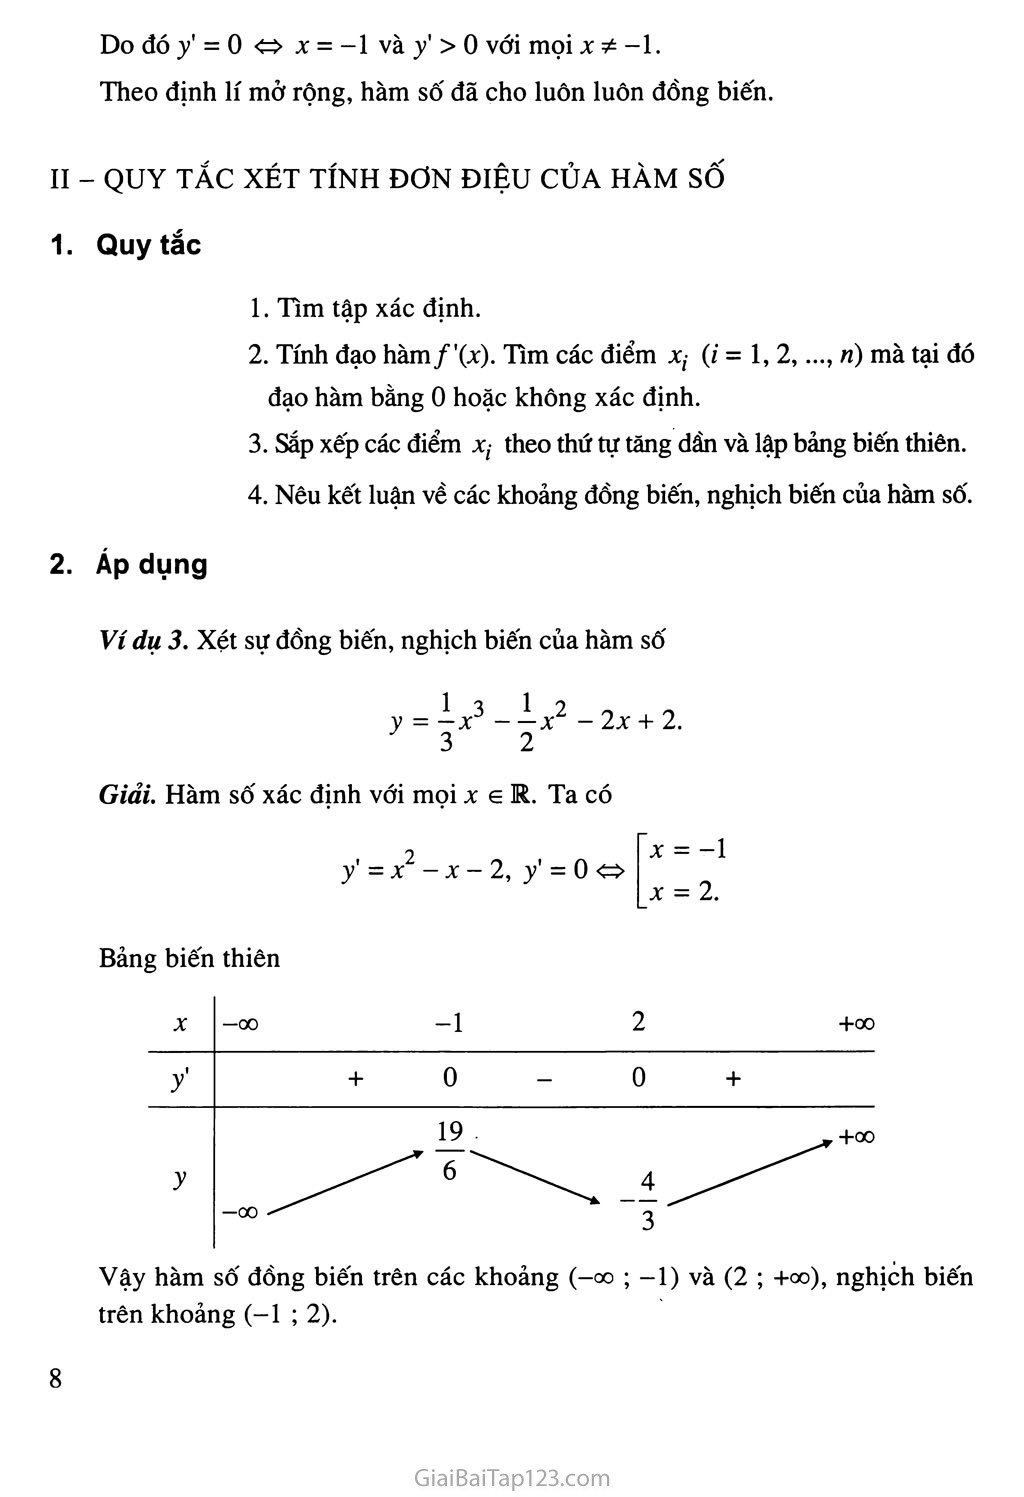 Bài 1. Sự đồng biến, nghịch biến của hàm số - Bài đọc thêm: Tính chất đơn điệu của hàm số - Bạn có biết: La - garăng (J. L. Lagrange) trang 6